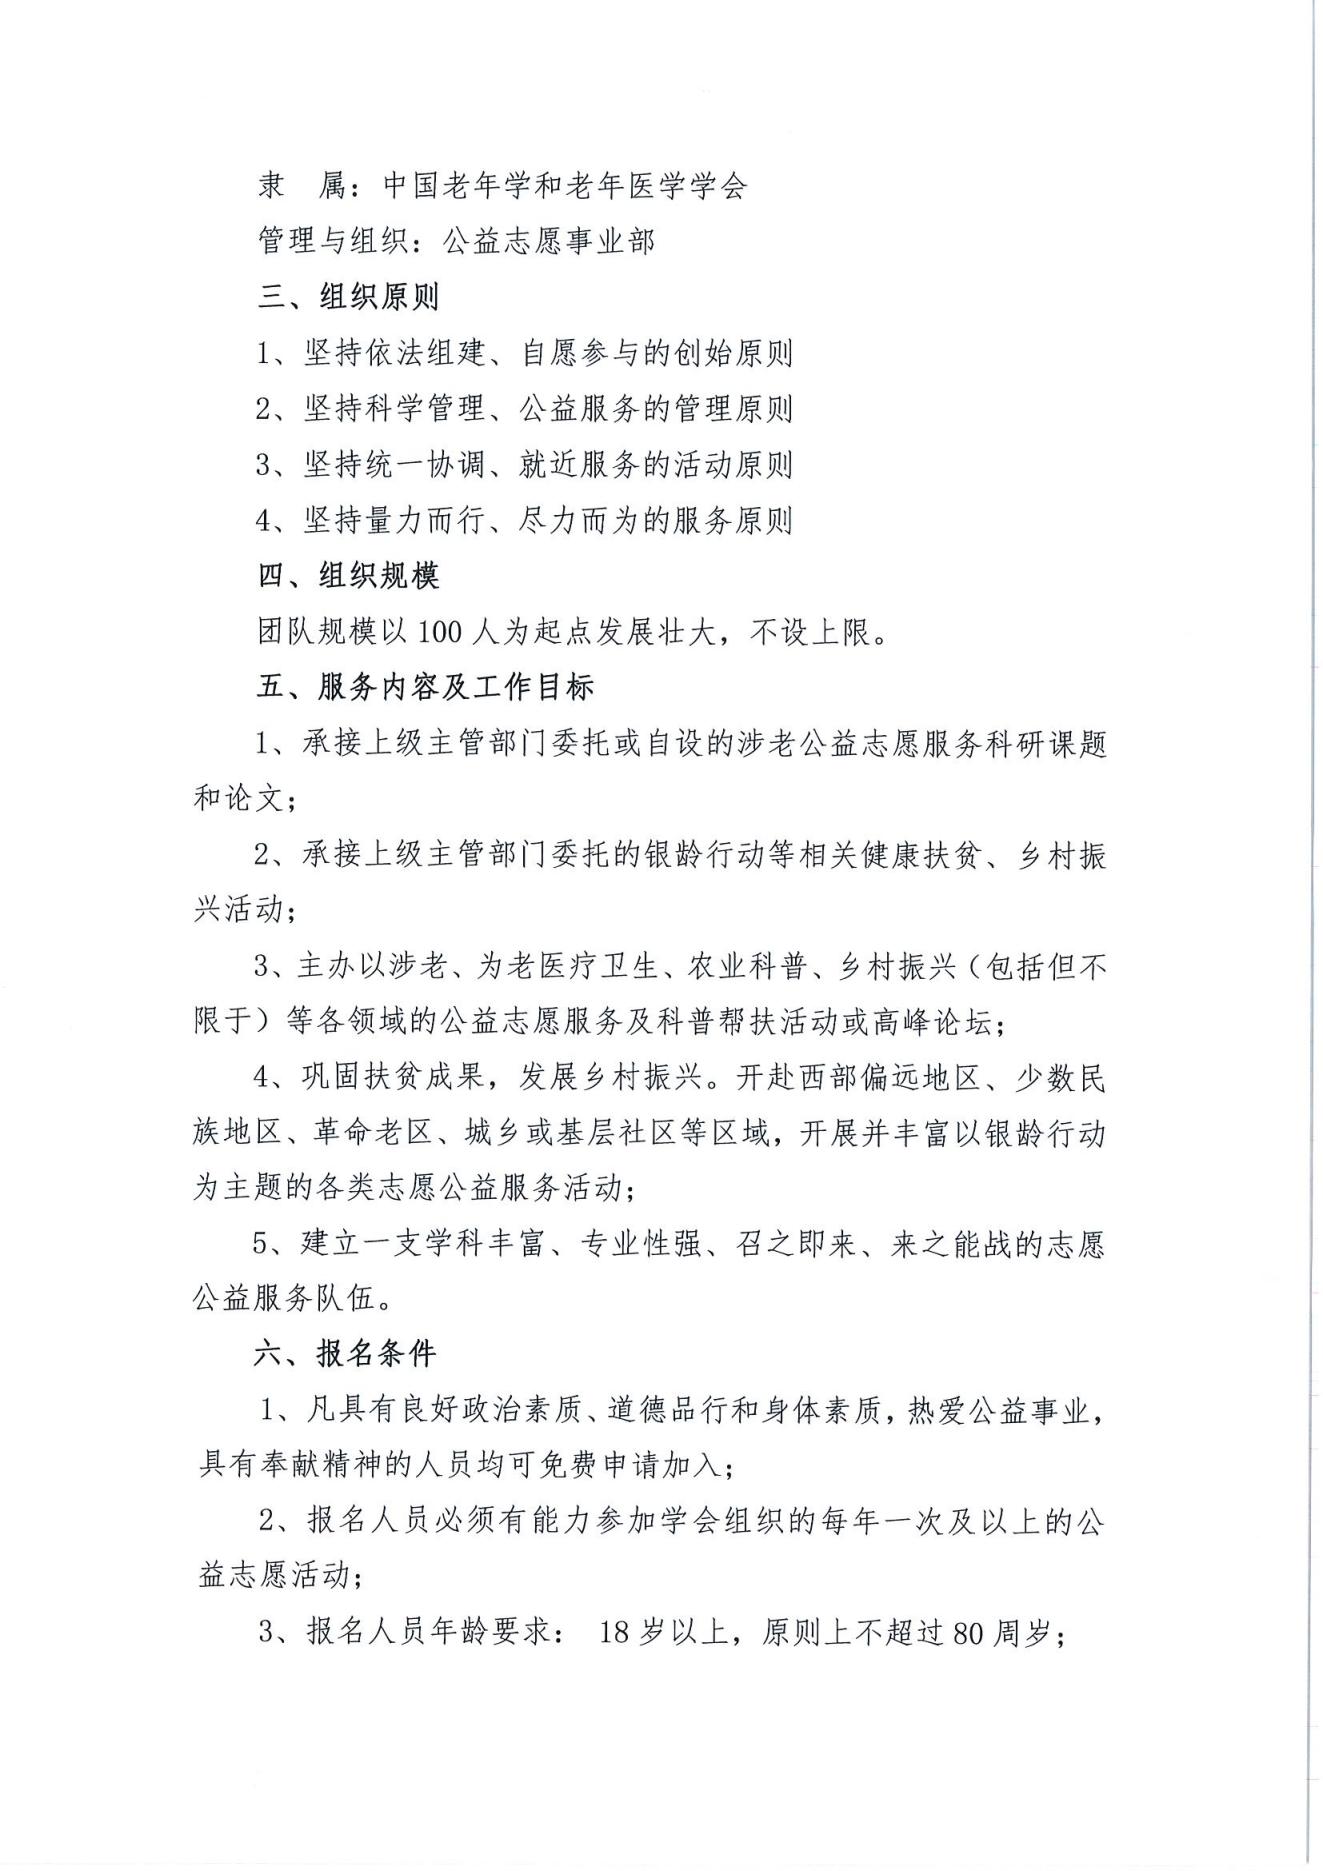 关于招募第二批中国老年学和老年医学学会志愿服务团的通知(2)_01.jpg